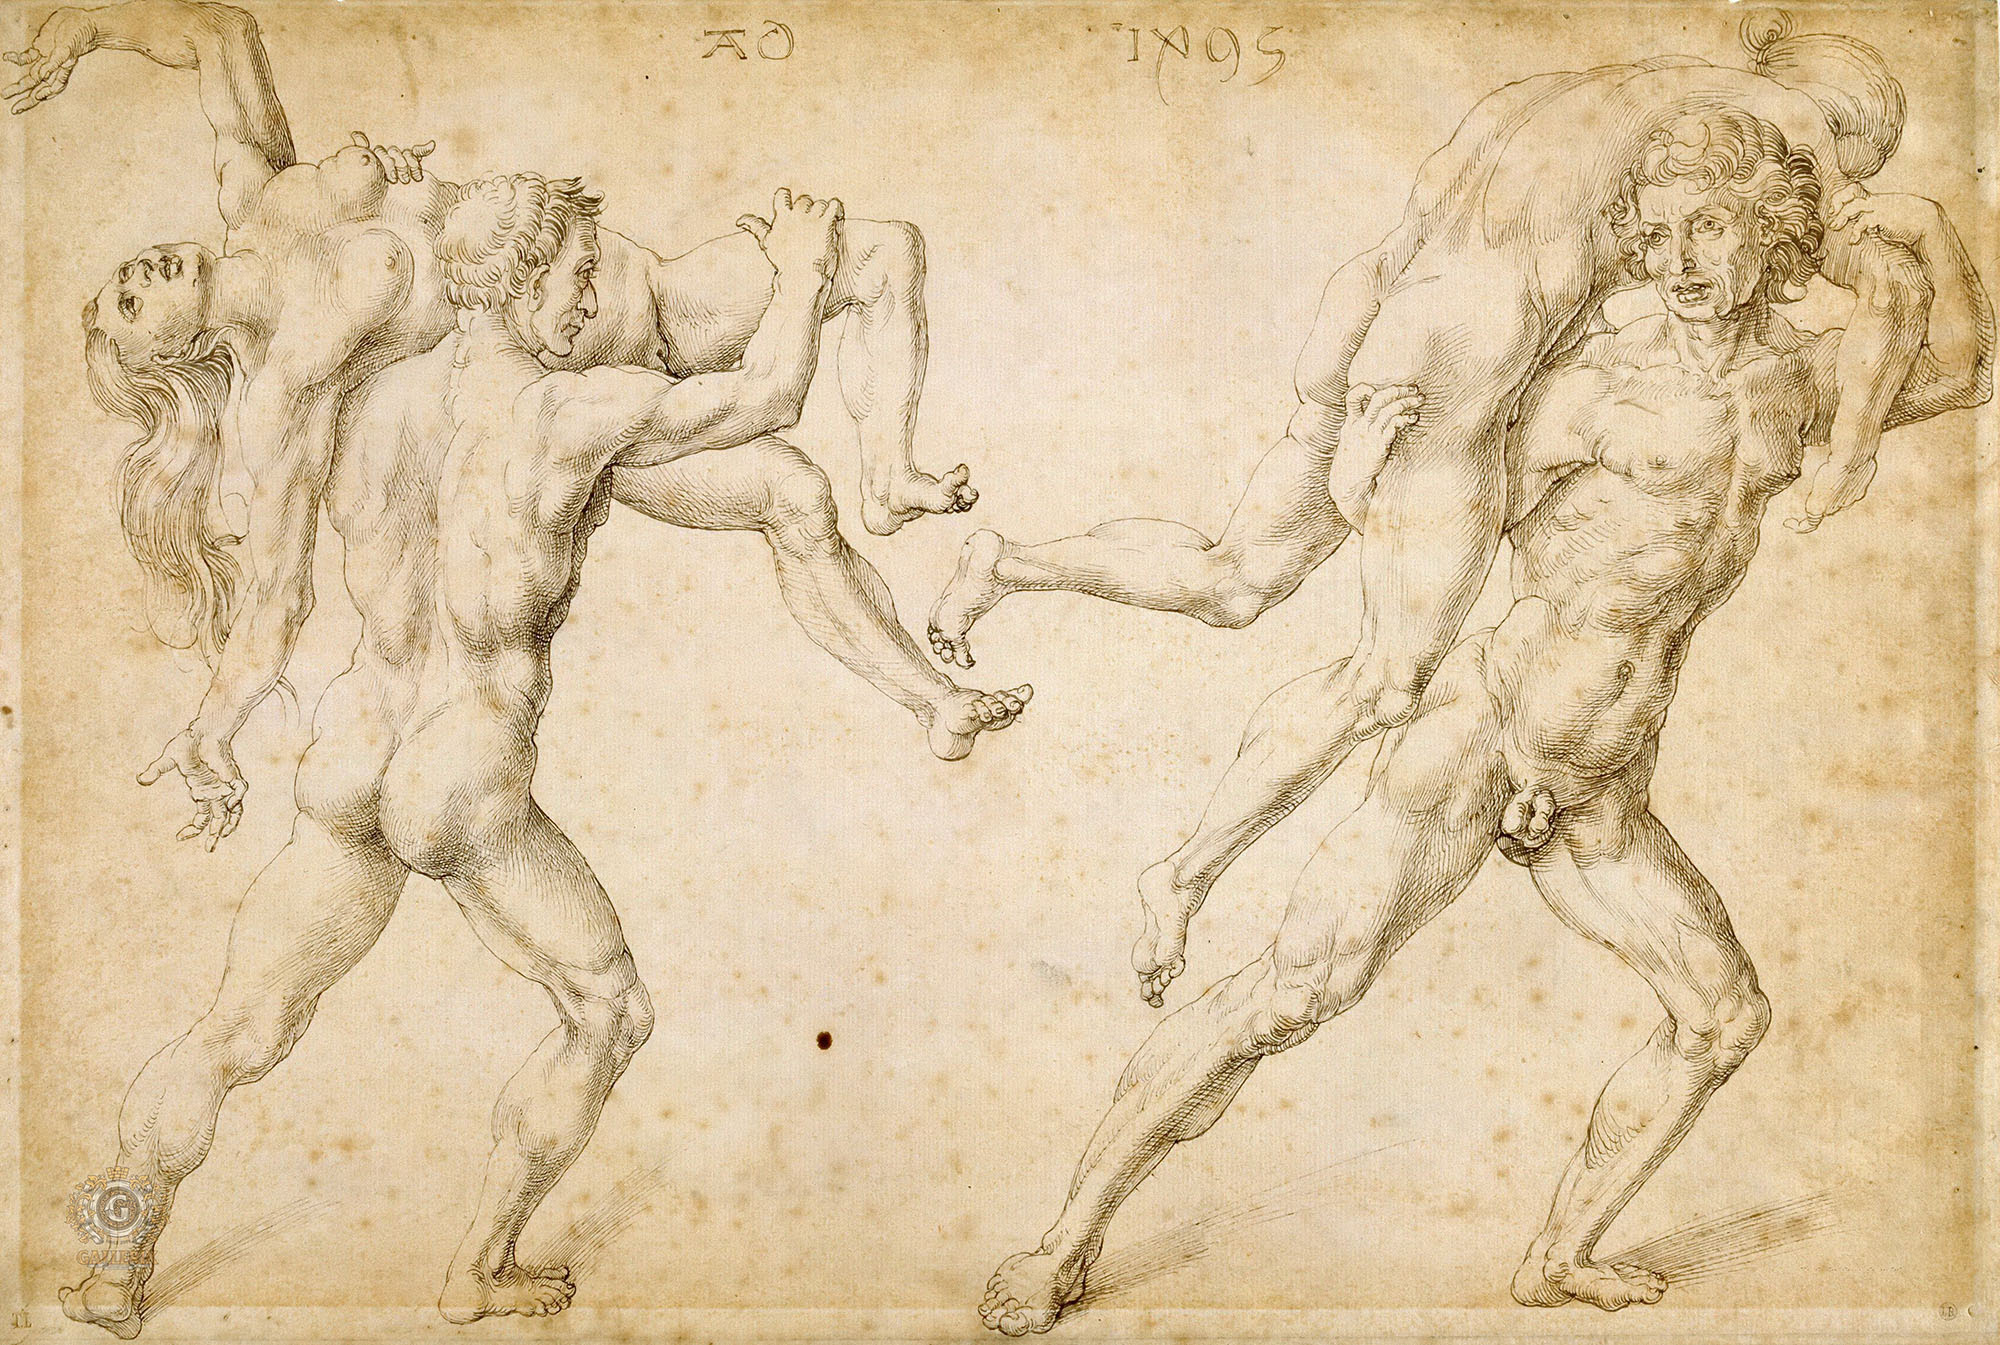 Альбрехт Дюрер. "Двое мужчин, несущих на плечах двух женщин". 1495. Музей Бонна-Эллё, Байонна.